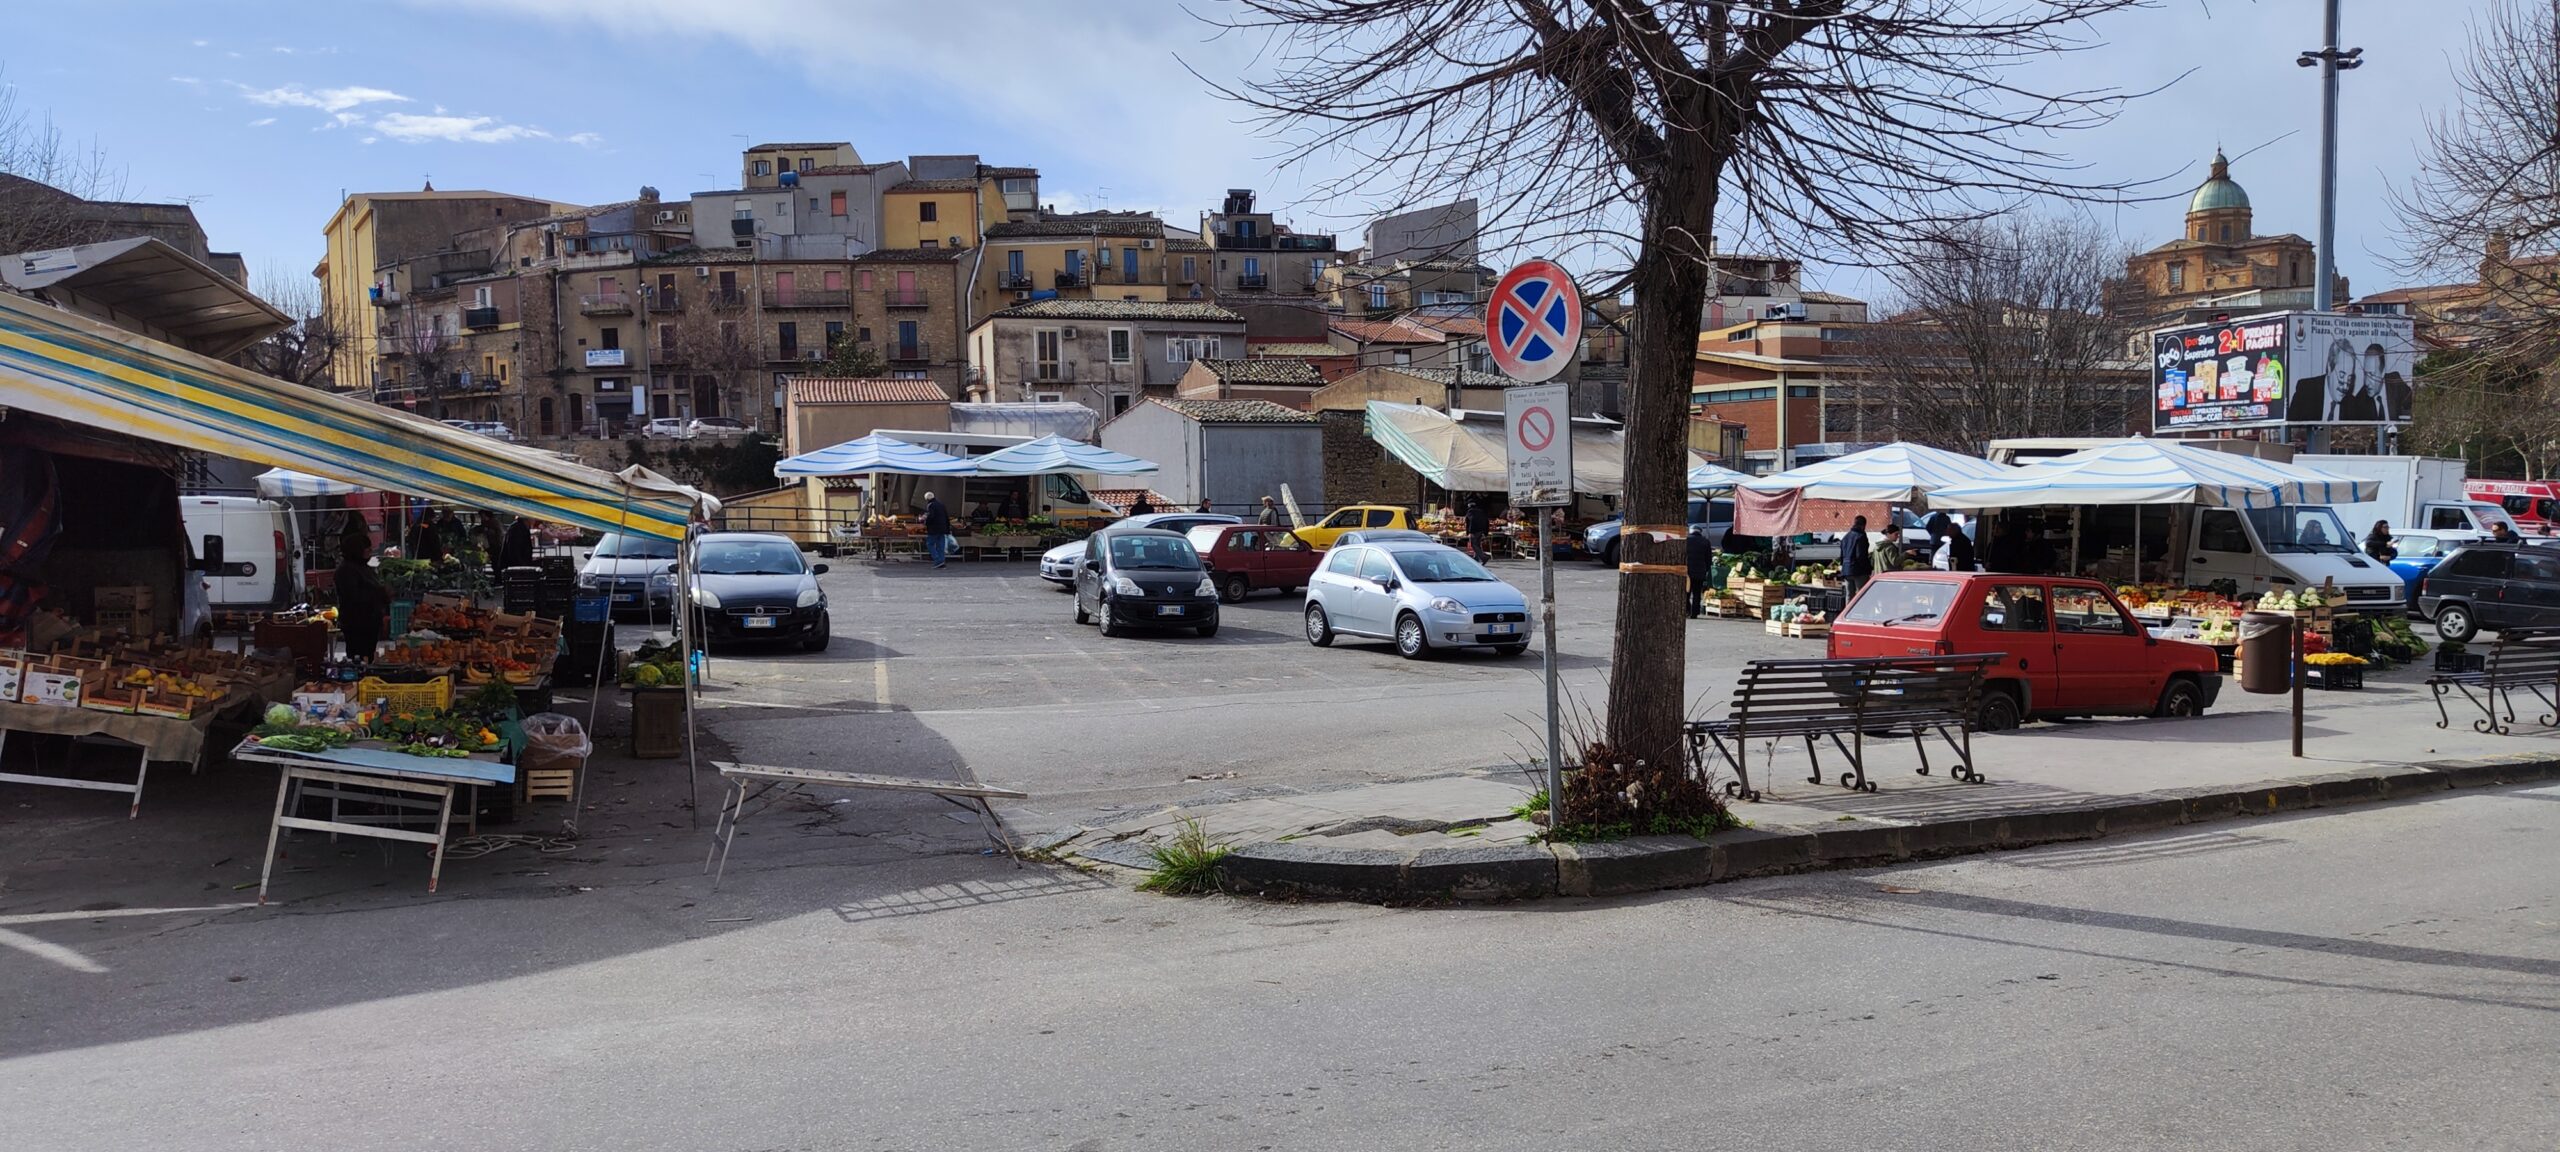 Piazza Armerina. Il parcheggio selvaggio invade il mercatino di piazza Falcone Borsellino.